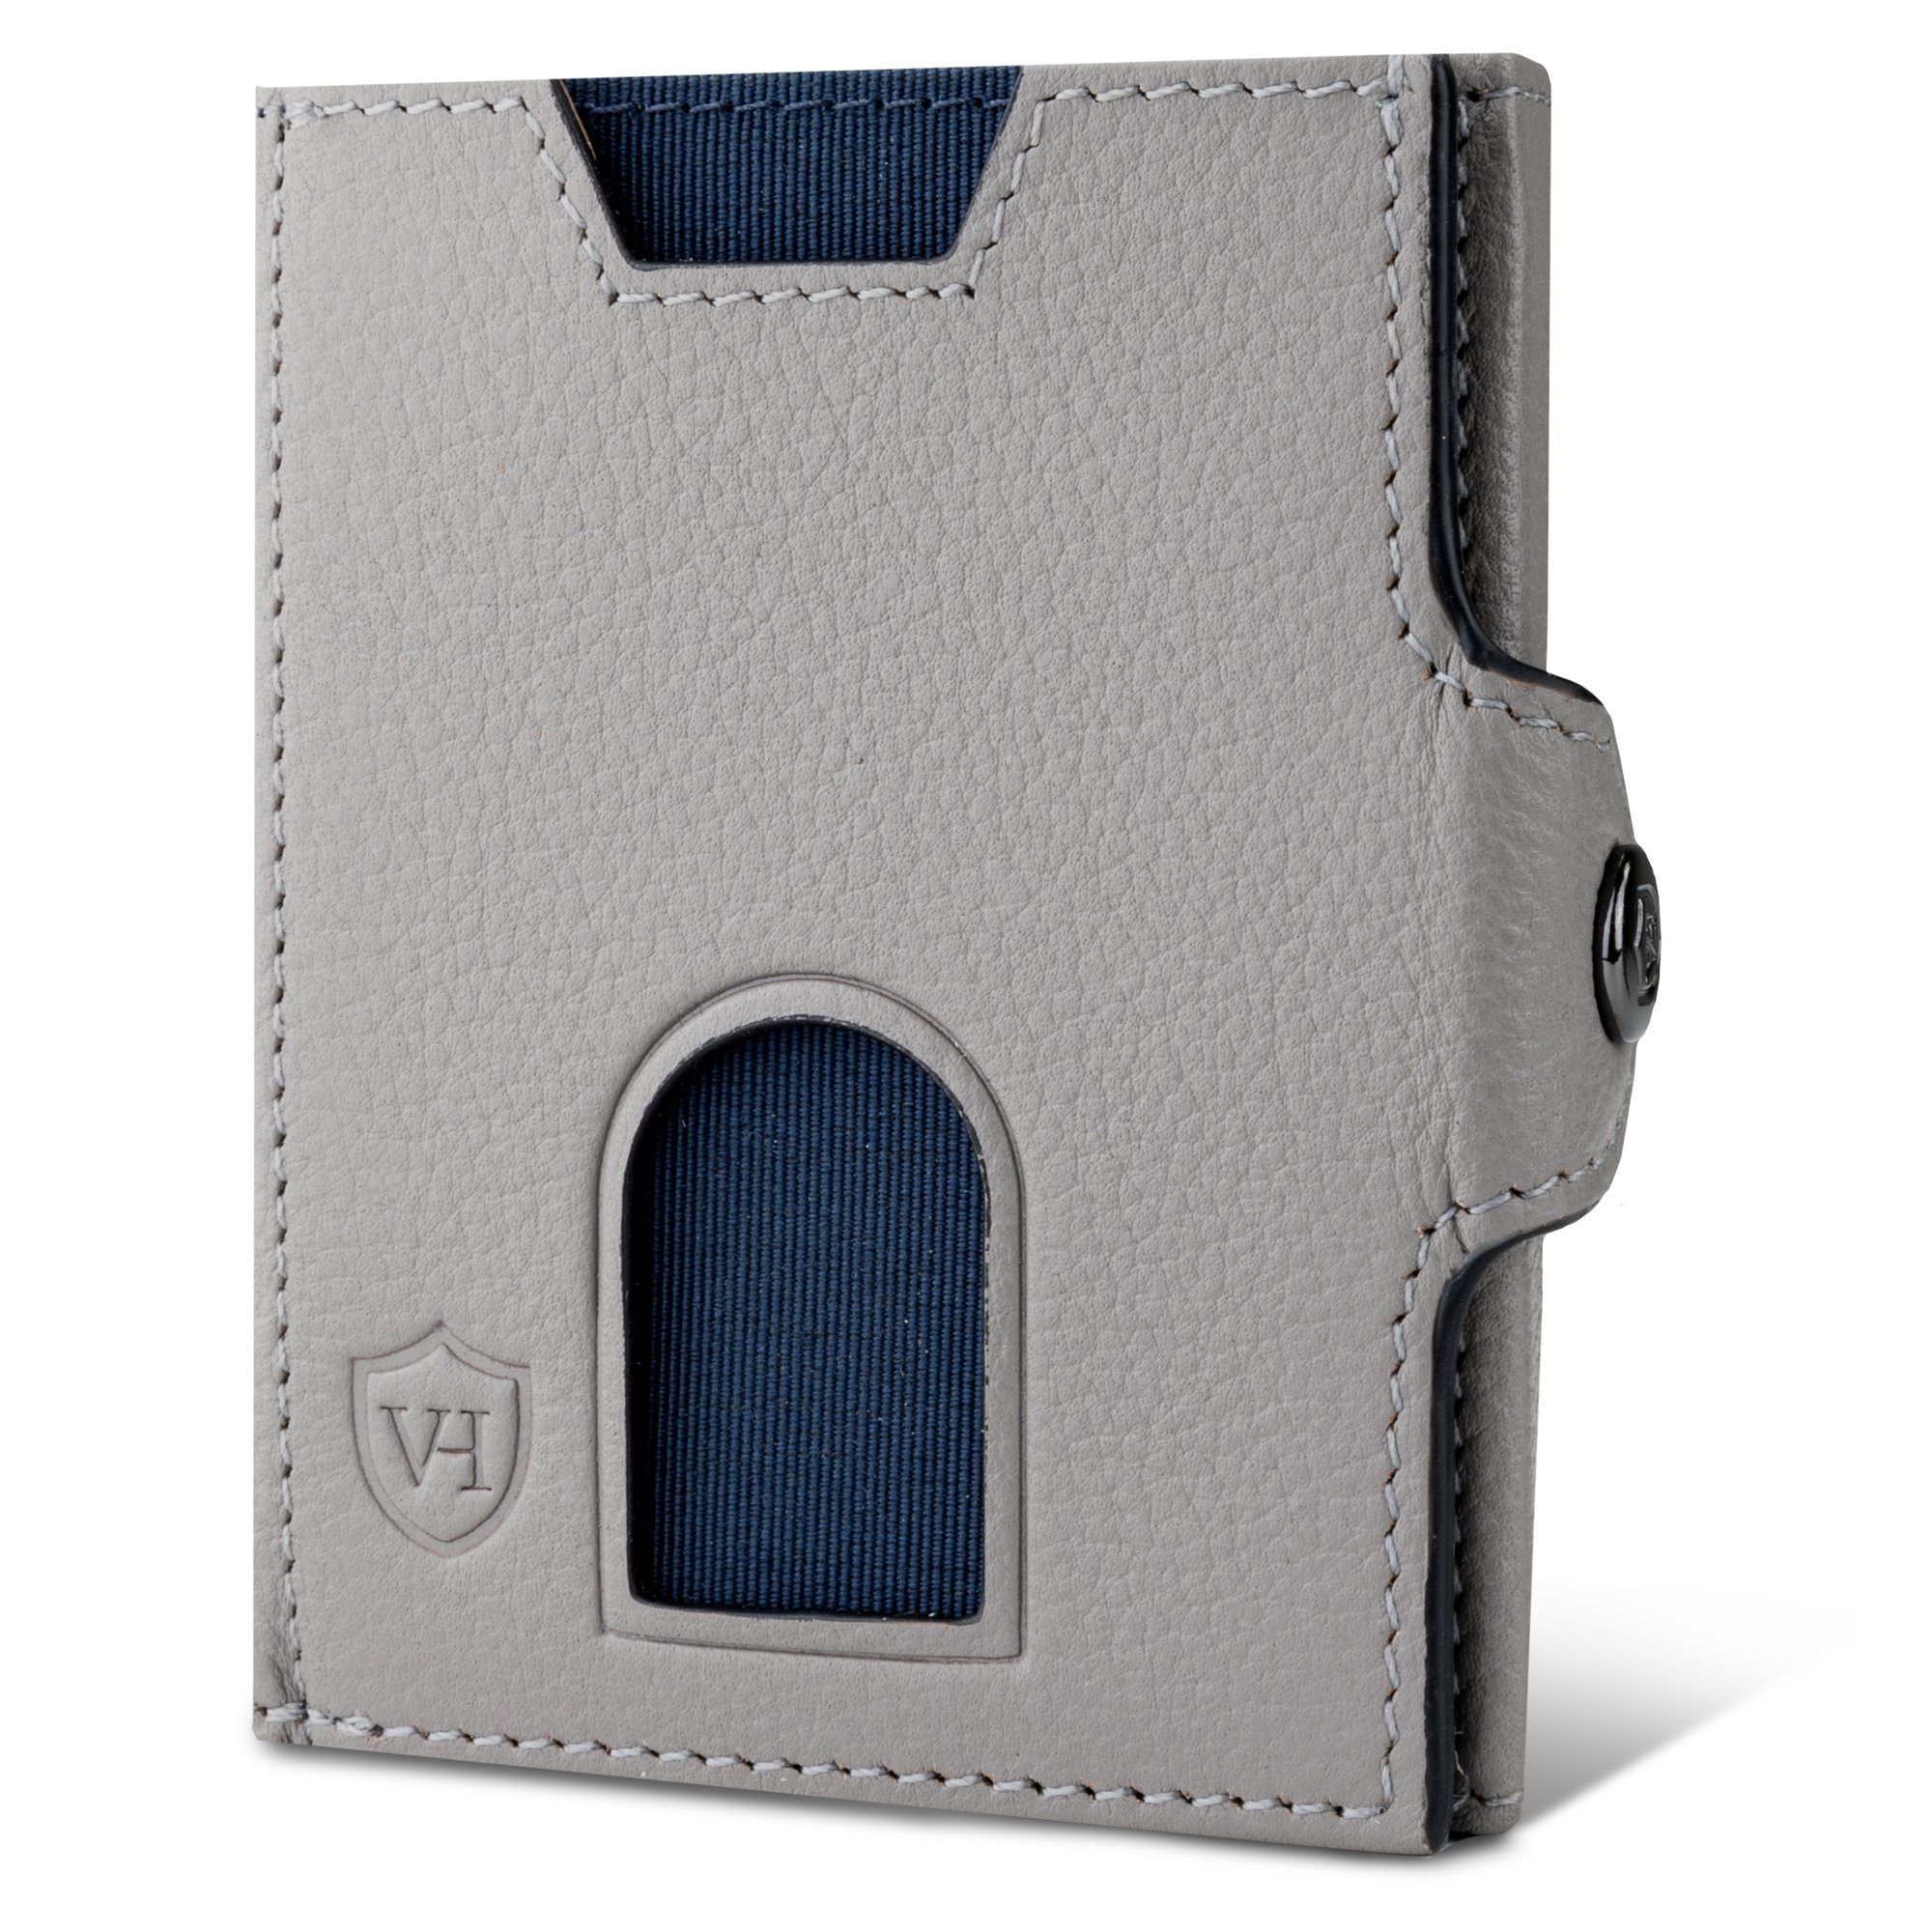 Wallet Grau inkl. HEESEN Geldbeutel Geschenkbox Wallet & mit VON RFID-Schutz Kartenfächer, Portemonnaie Geldbörse Slim Whizz 6